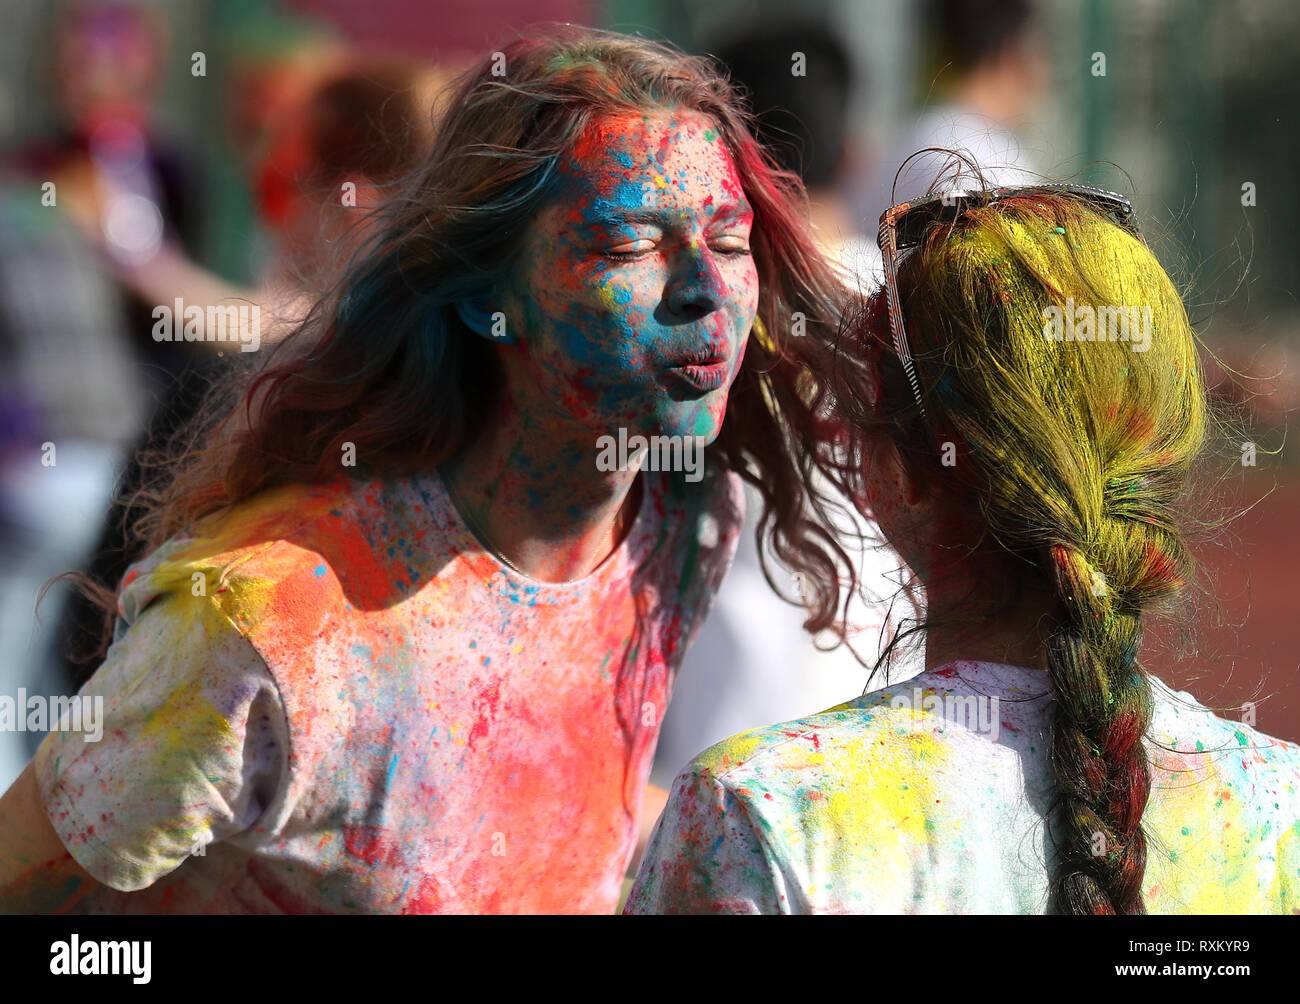 La gente a prendere parte al festival indù di Holi, noto anche come il "Festival dei Colori' su Belmont verde a Dundee University organizzato dalla universitys società indiana. Foto Stock